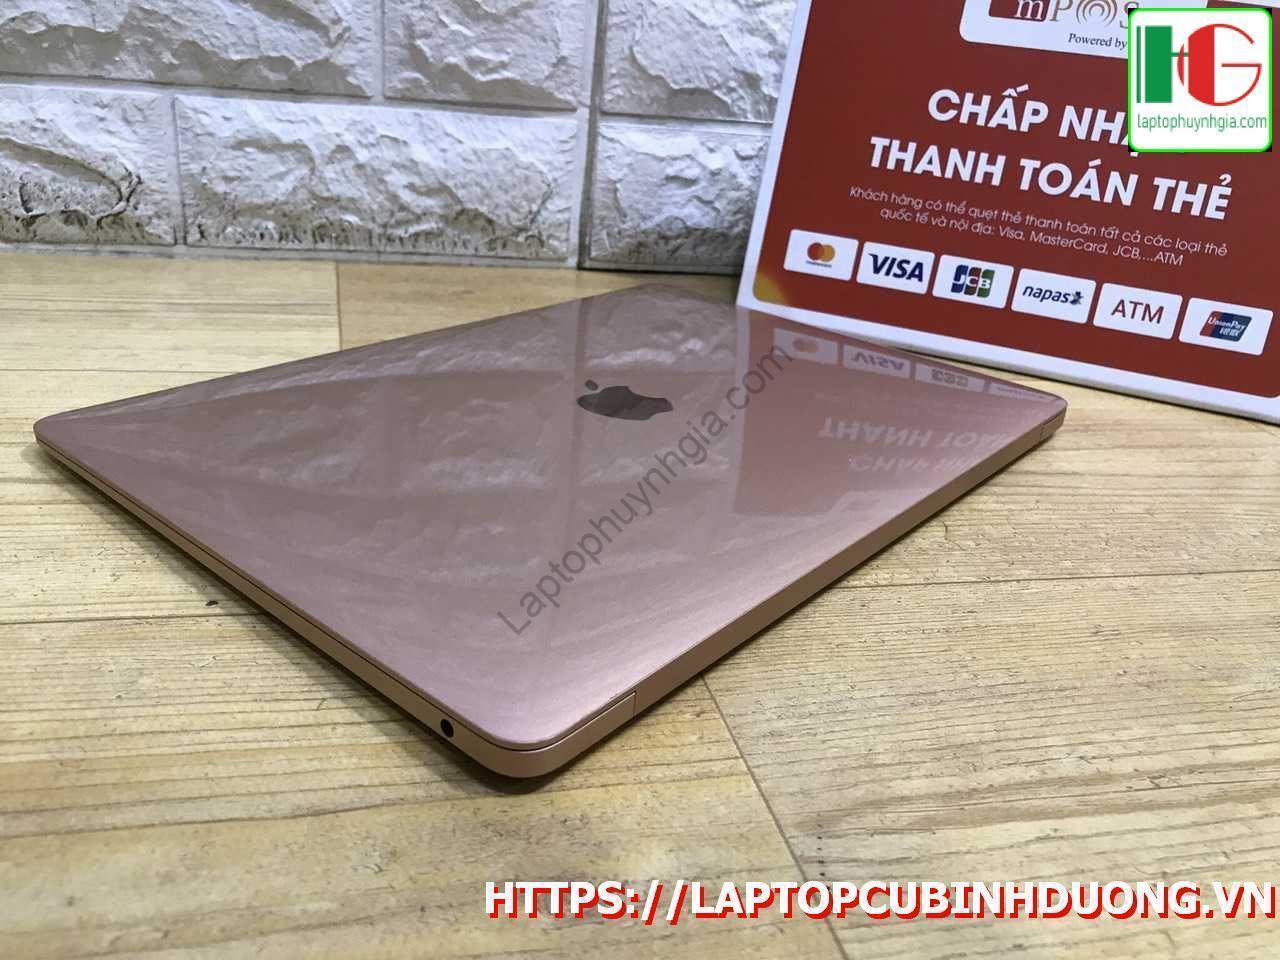 Macbook Air 2018 I5 8g Ssd 128g Laptopcubinhduong.vn 1